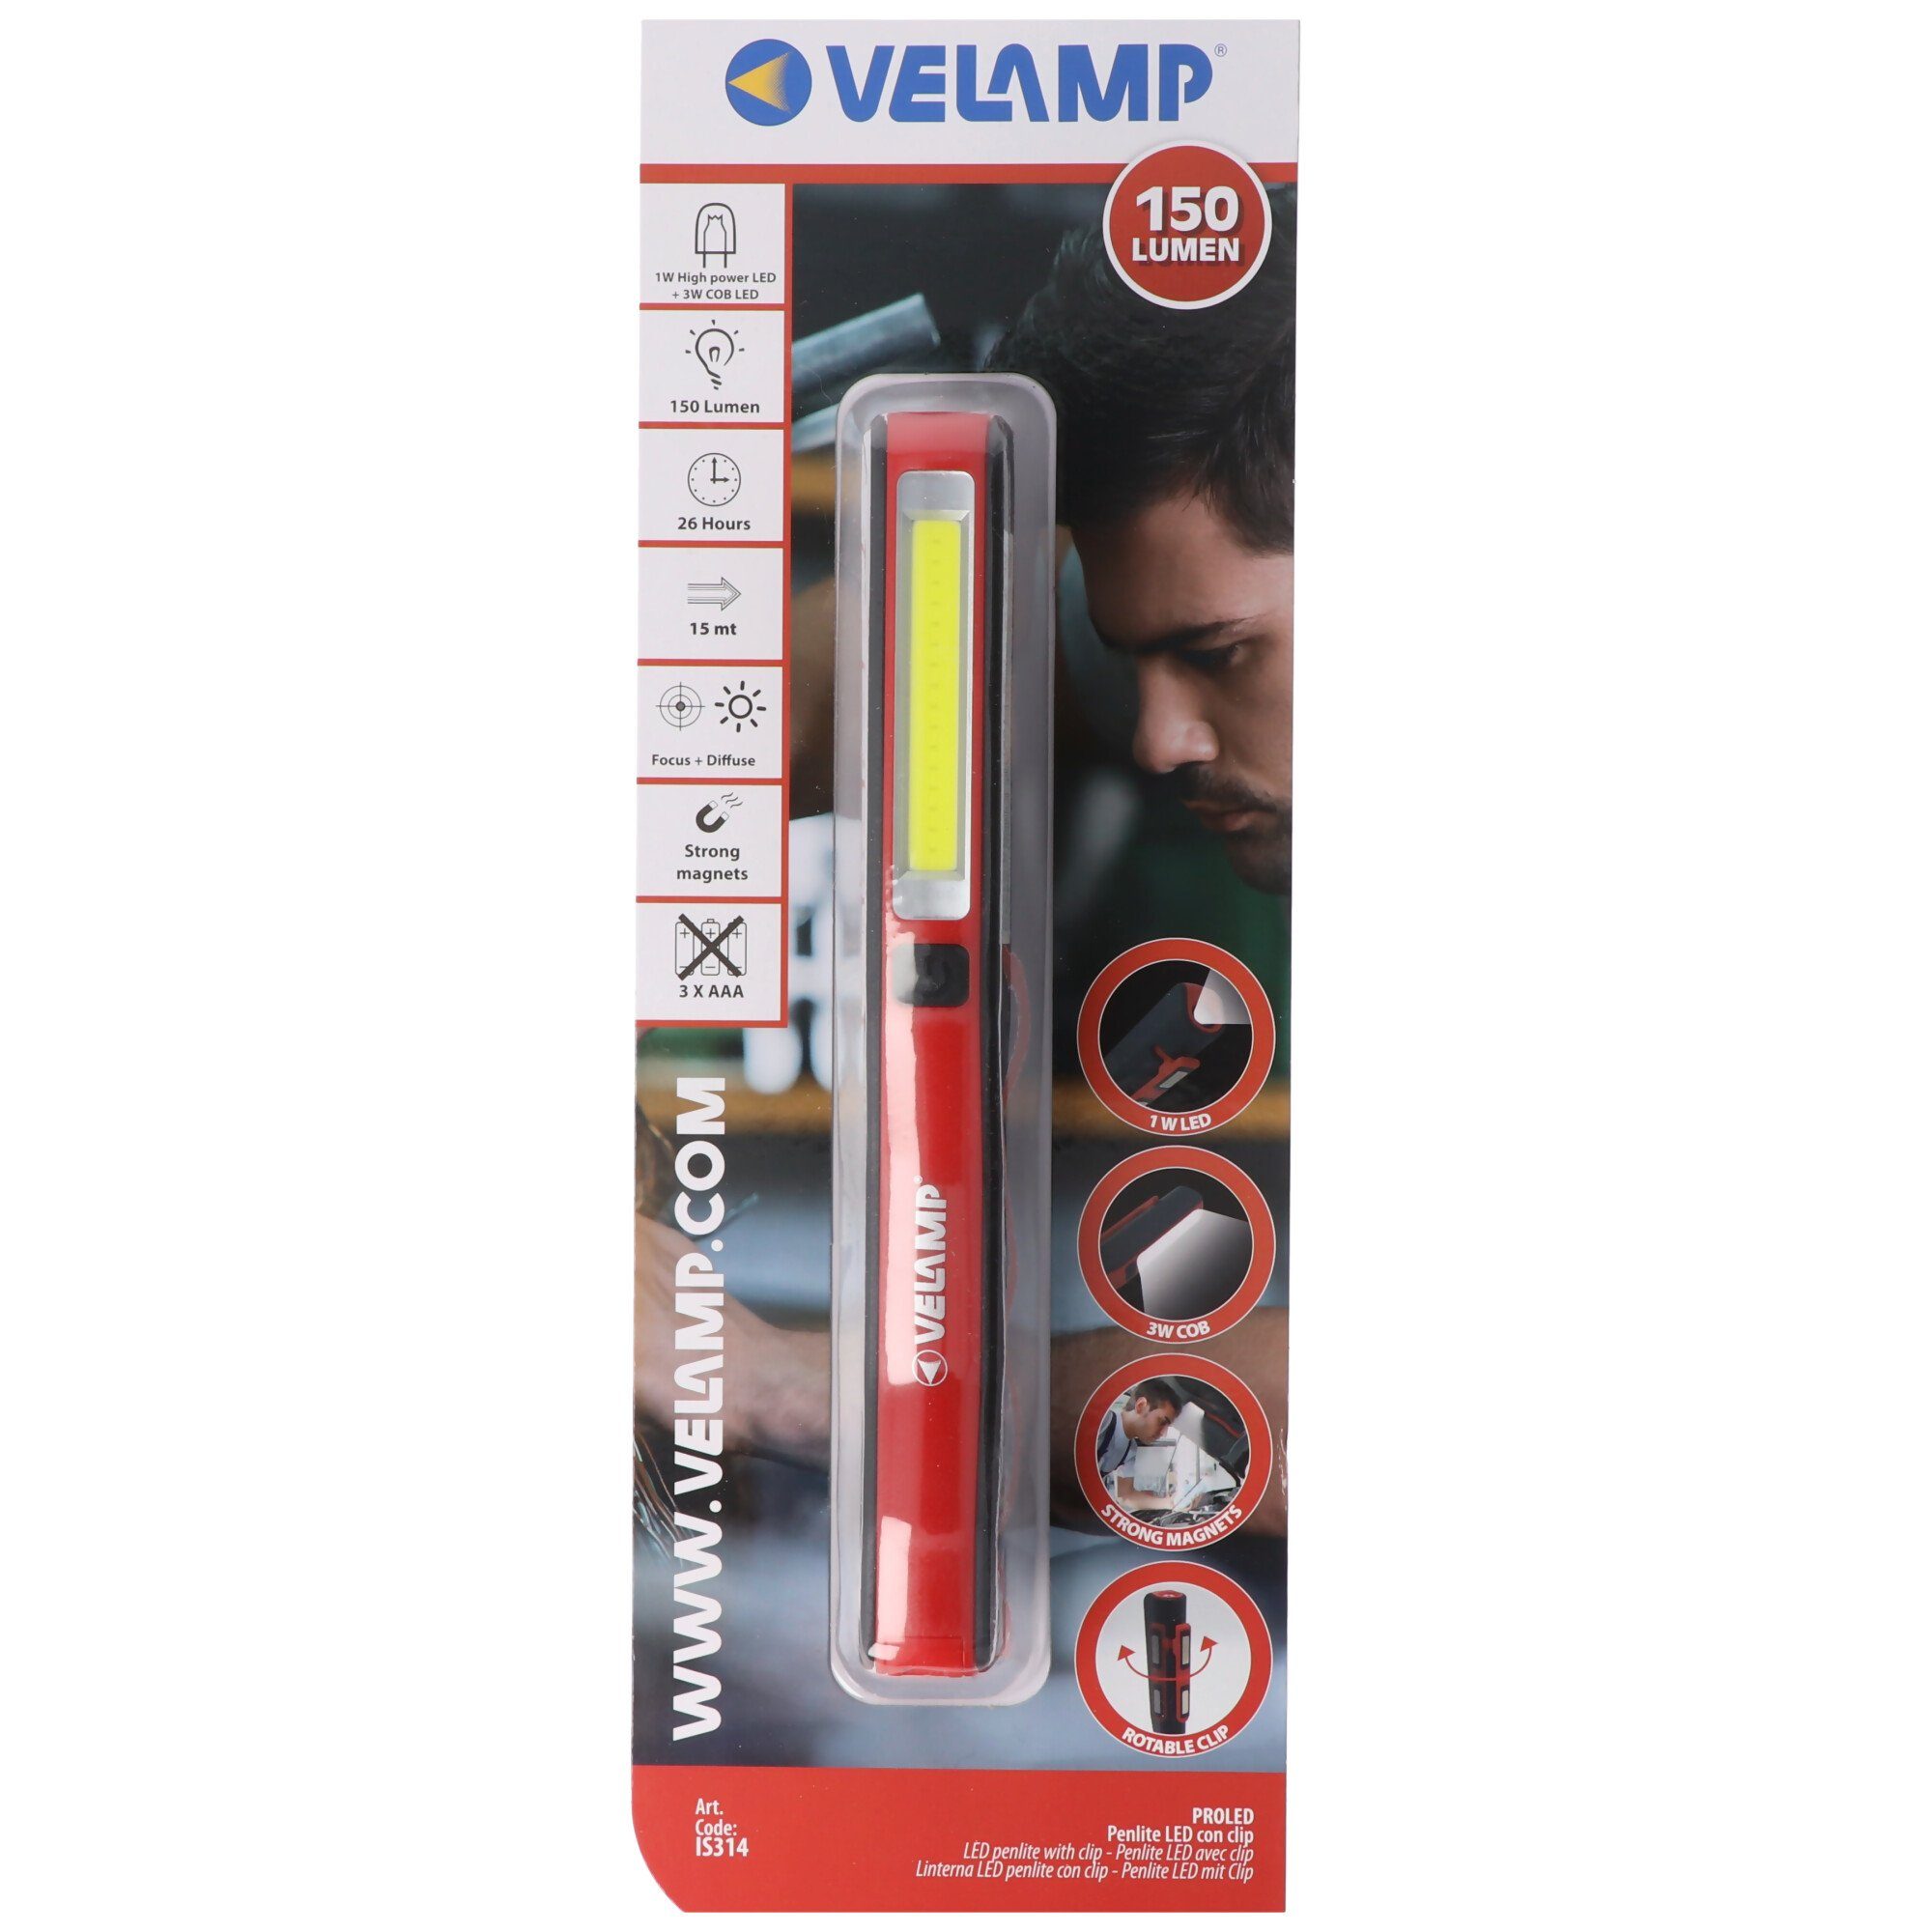 Velamp Arbeitsleuchte LED-Taschenlampe 1 Watt, COB 3 Watt, batteriebetriebene 2in1 Arbeitsl